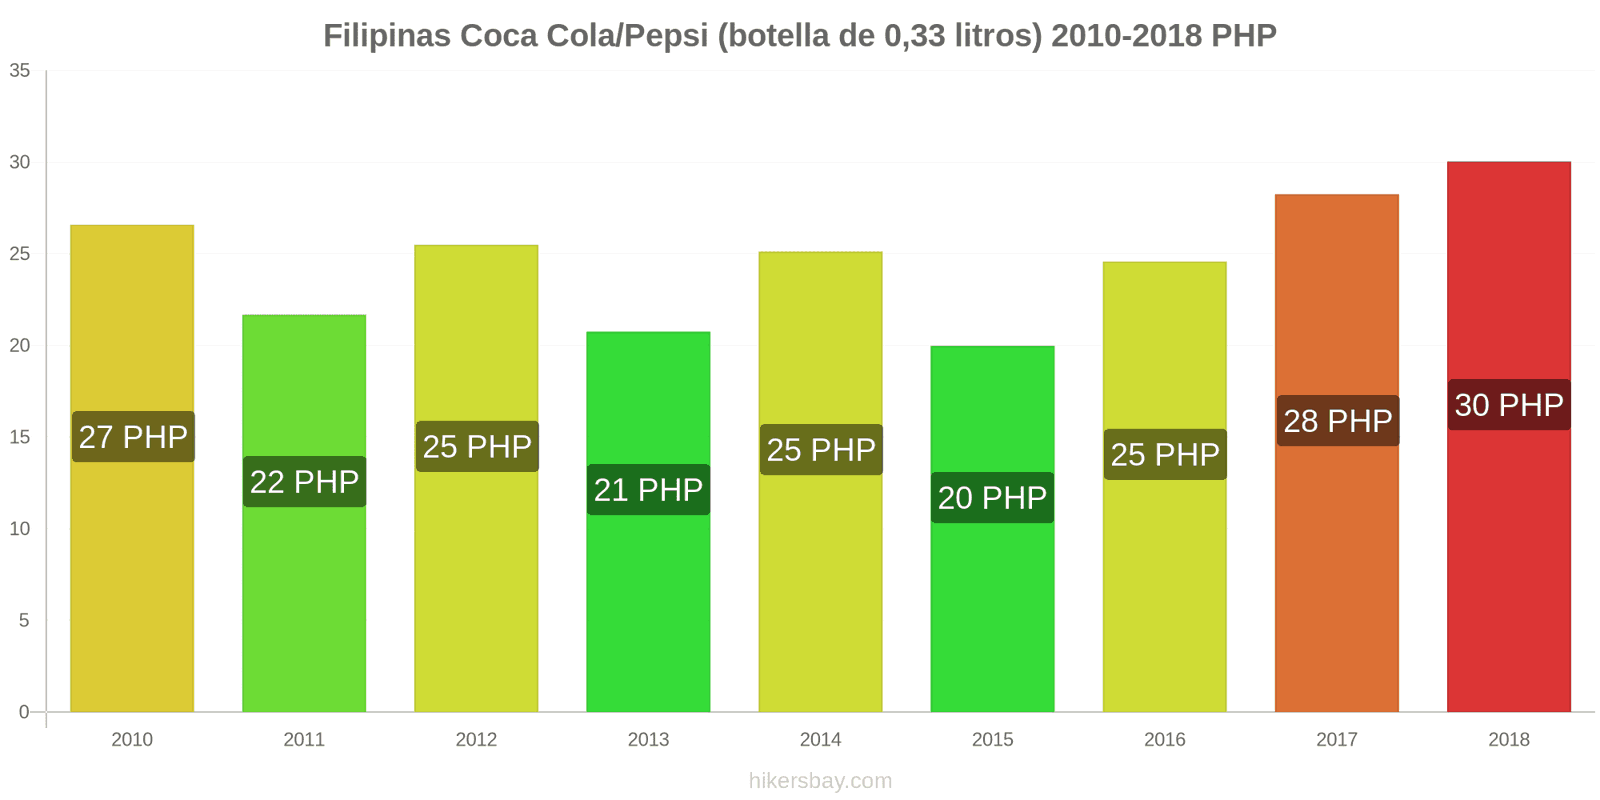 Filipinas cambios de precios Coca-Cola/Pepsi (botella de 0.33 litros) hikersbay.com